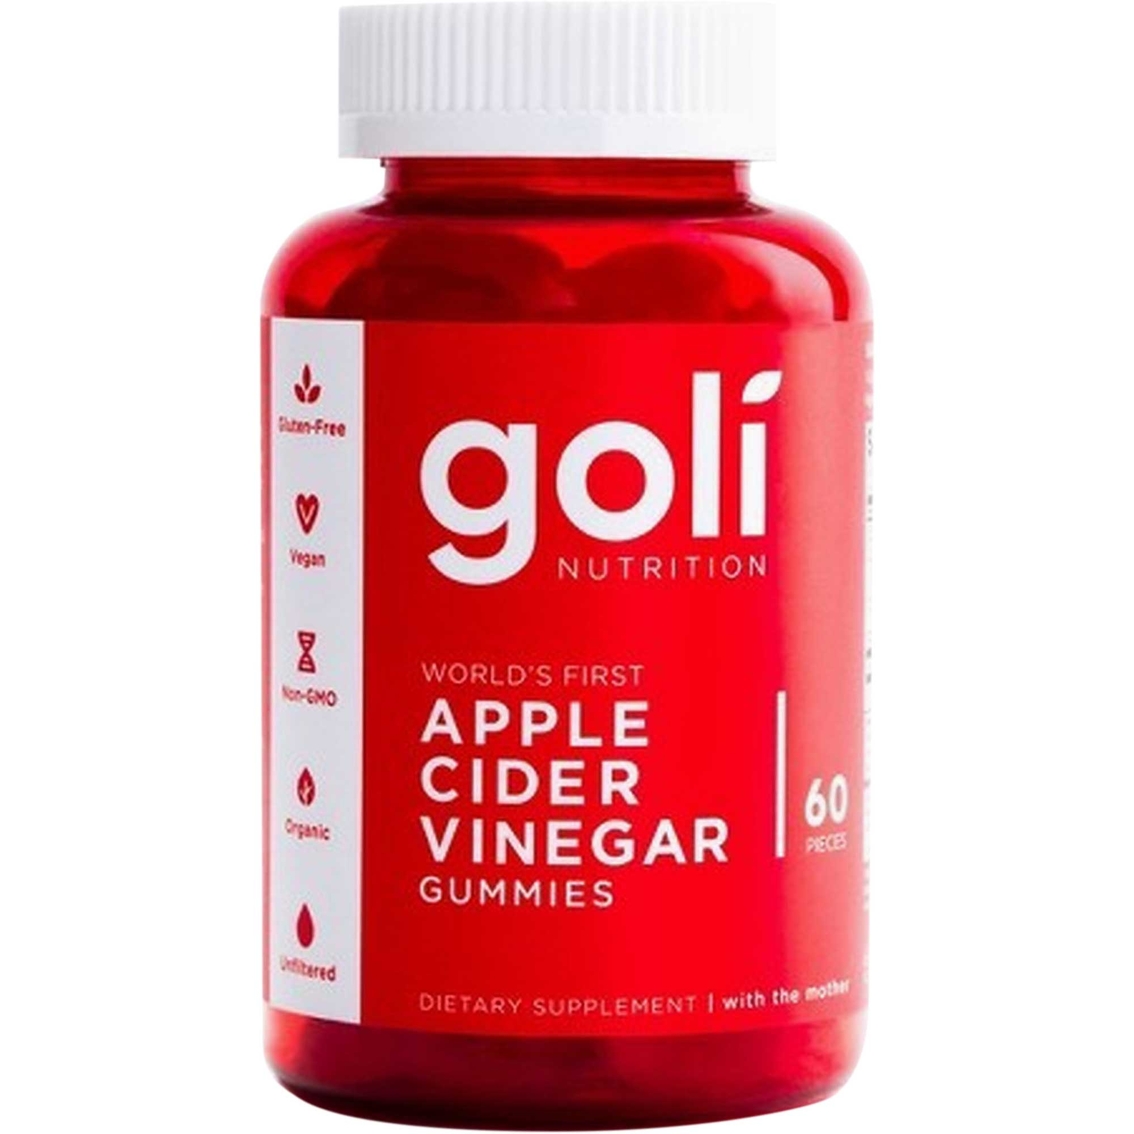 where can i buy goli apple cider vinegar gummies in australia